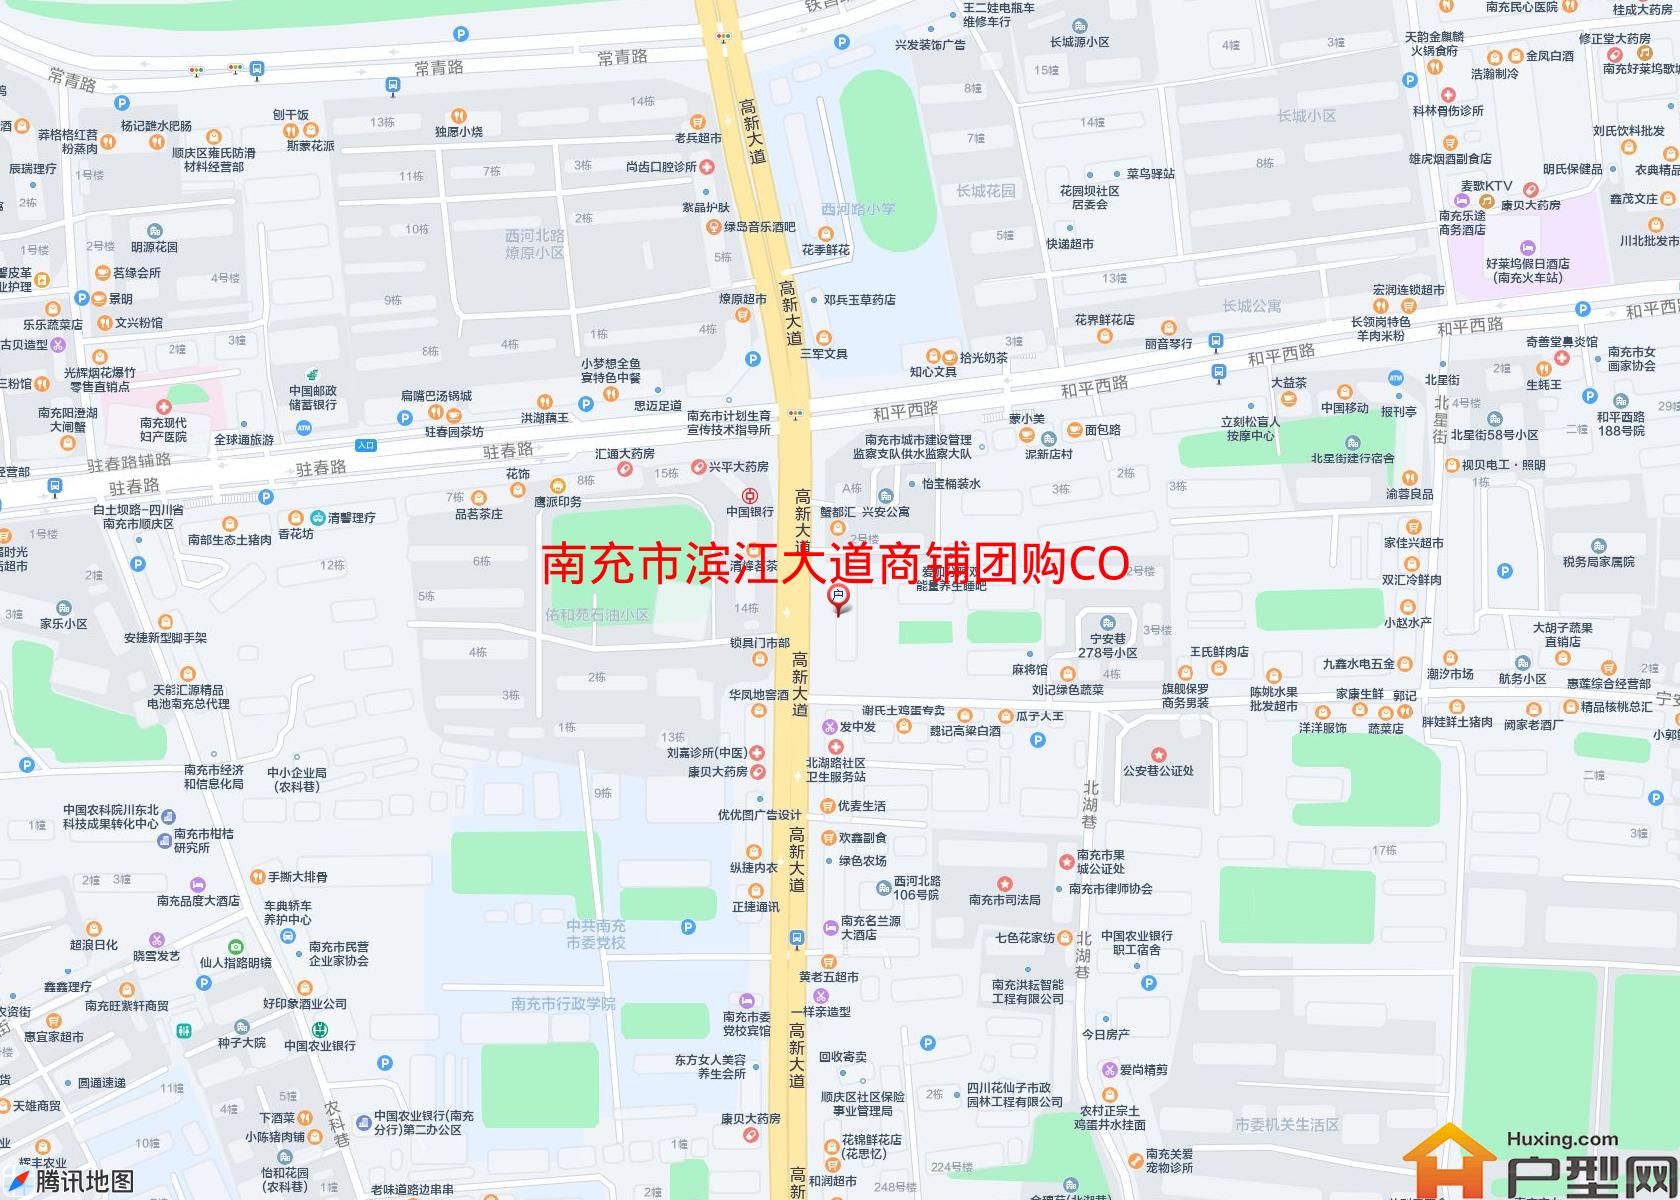 滨江大道商铺团购CO小区 - 户型网